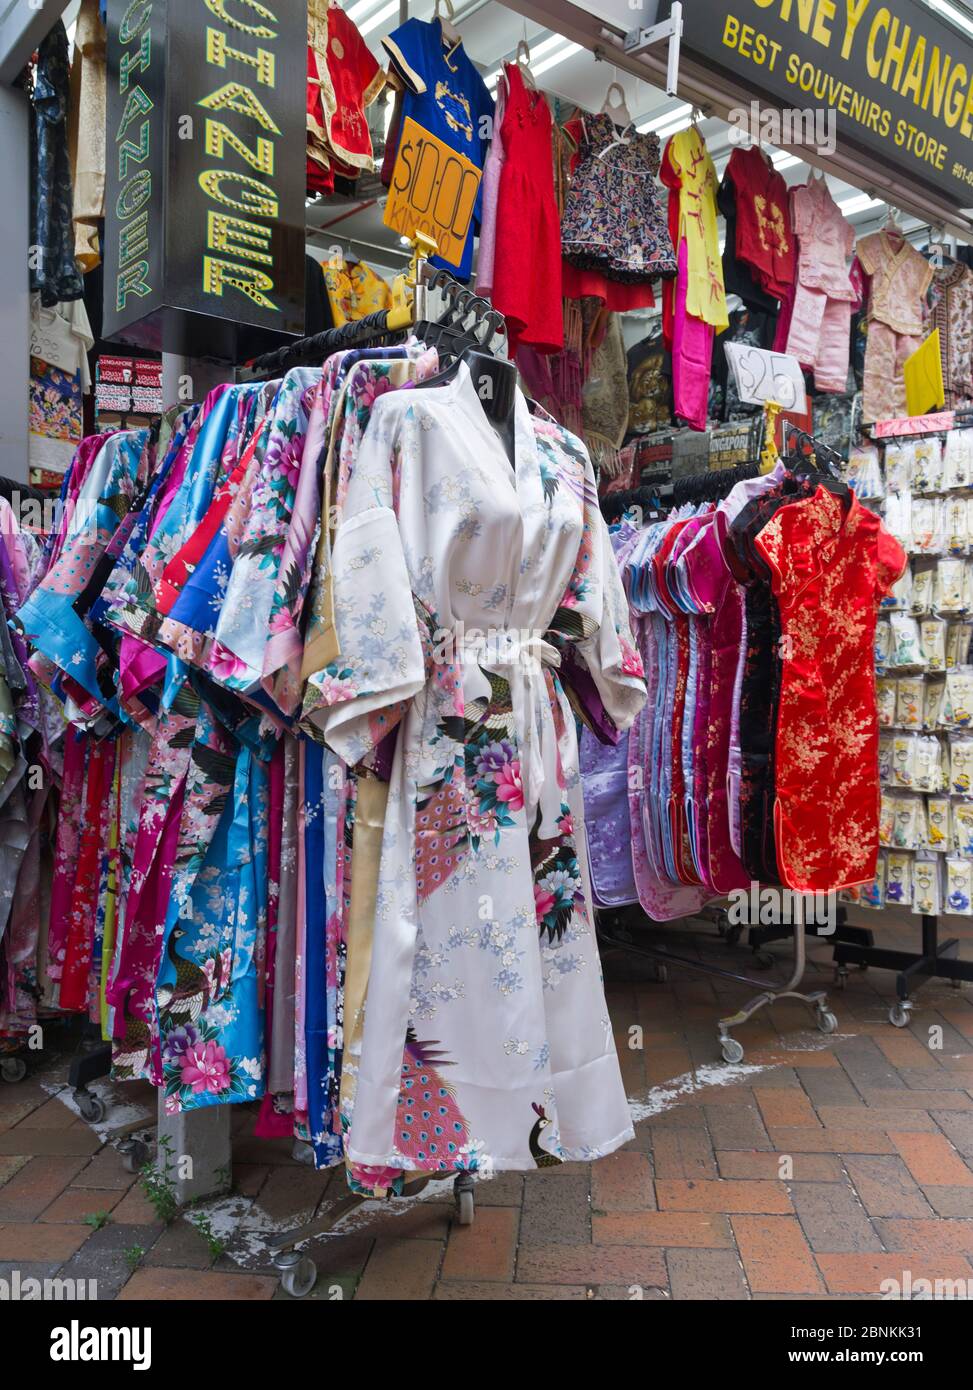 Dh Chinesische Geschafte Chinatown Singapur Seiden Morgenmantel Shop Display Damen Kleidung Kleider Kleid Geschaft Stockfotografie Alamy